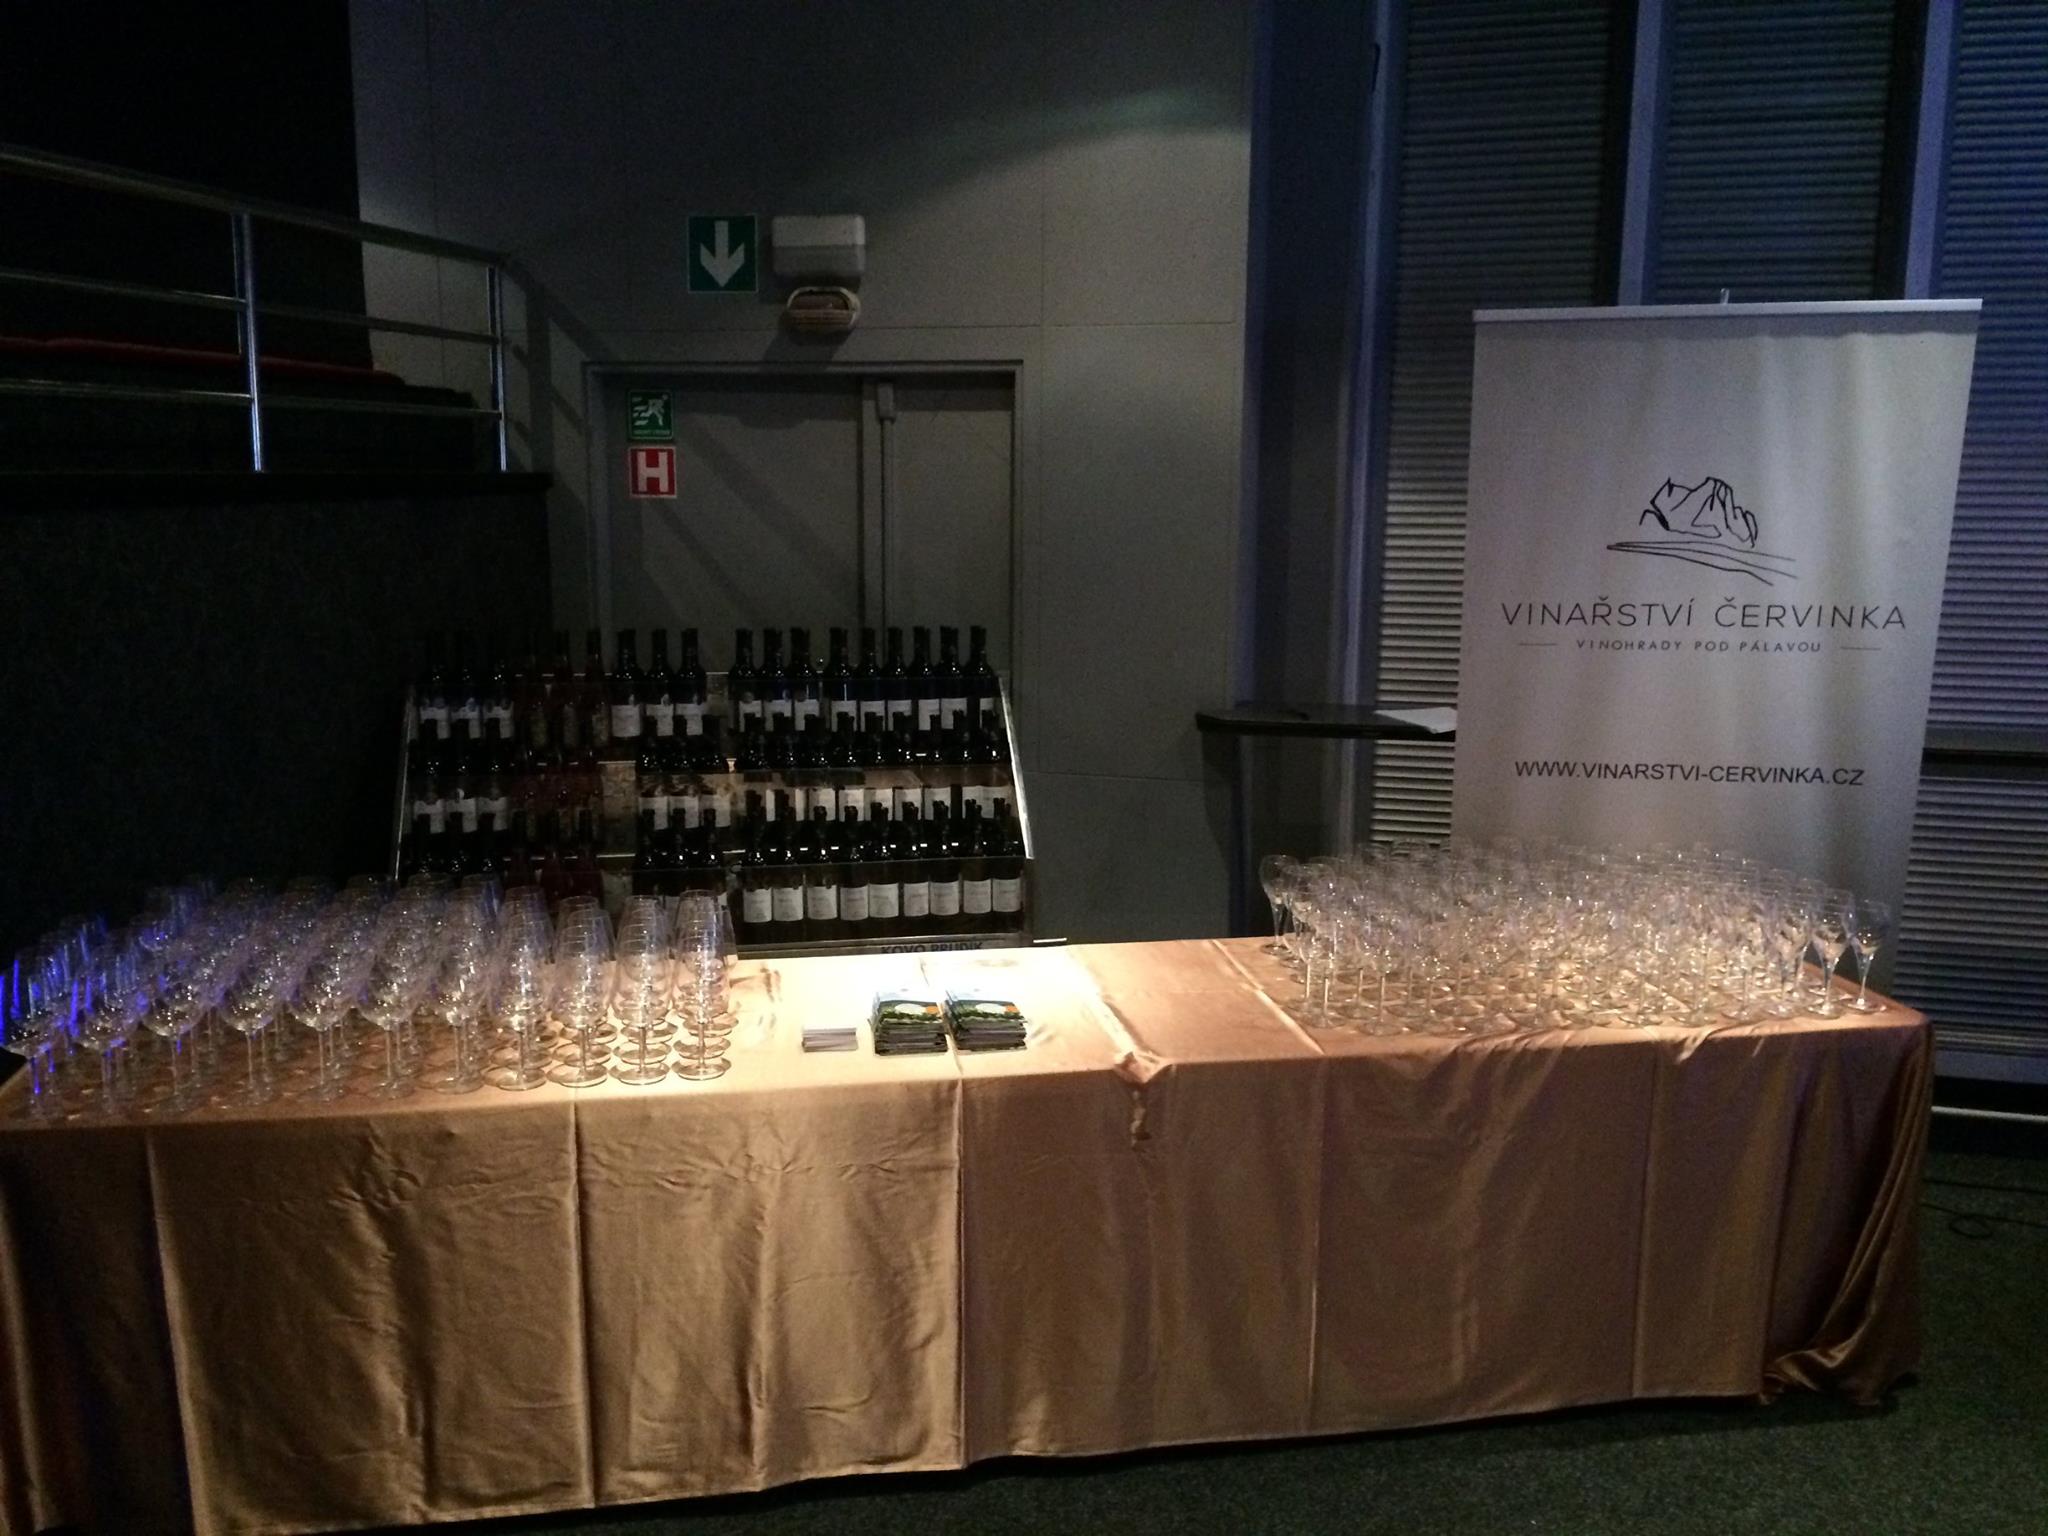 Profesionální degustace moravských vín s vinařem na svatbě nebo firemní akci